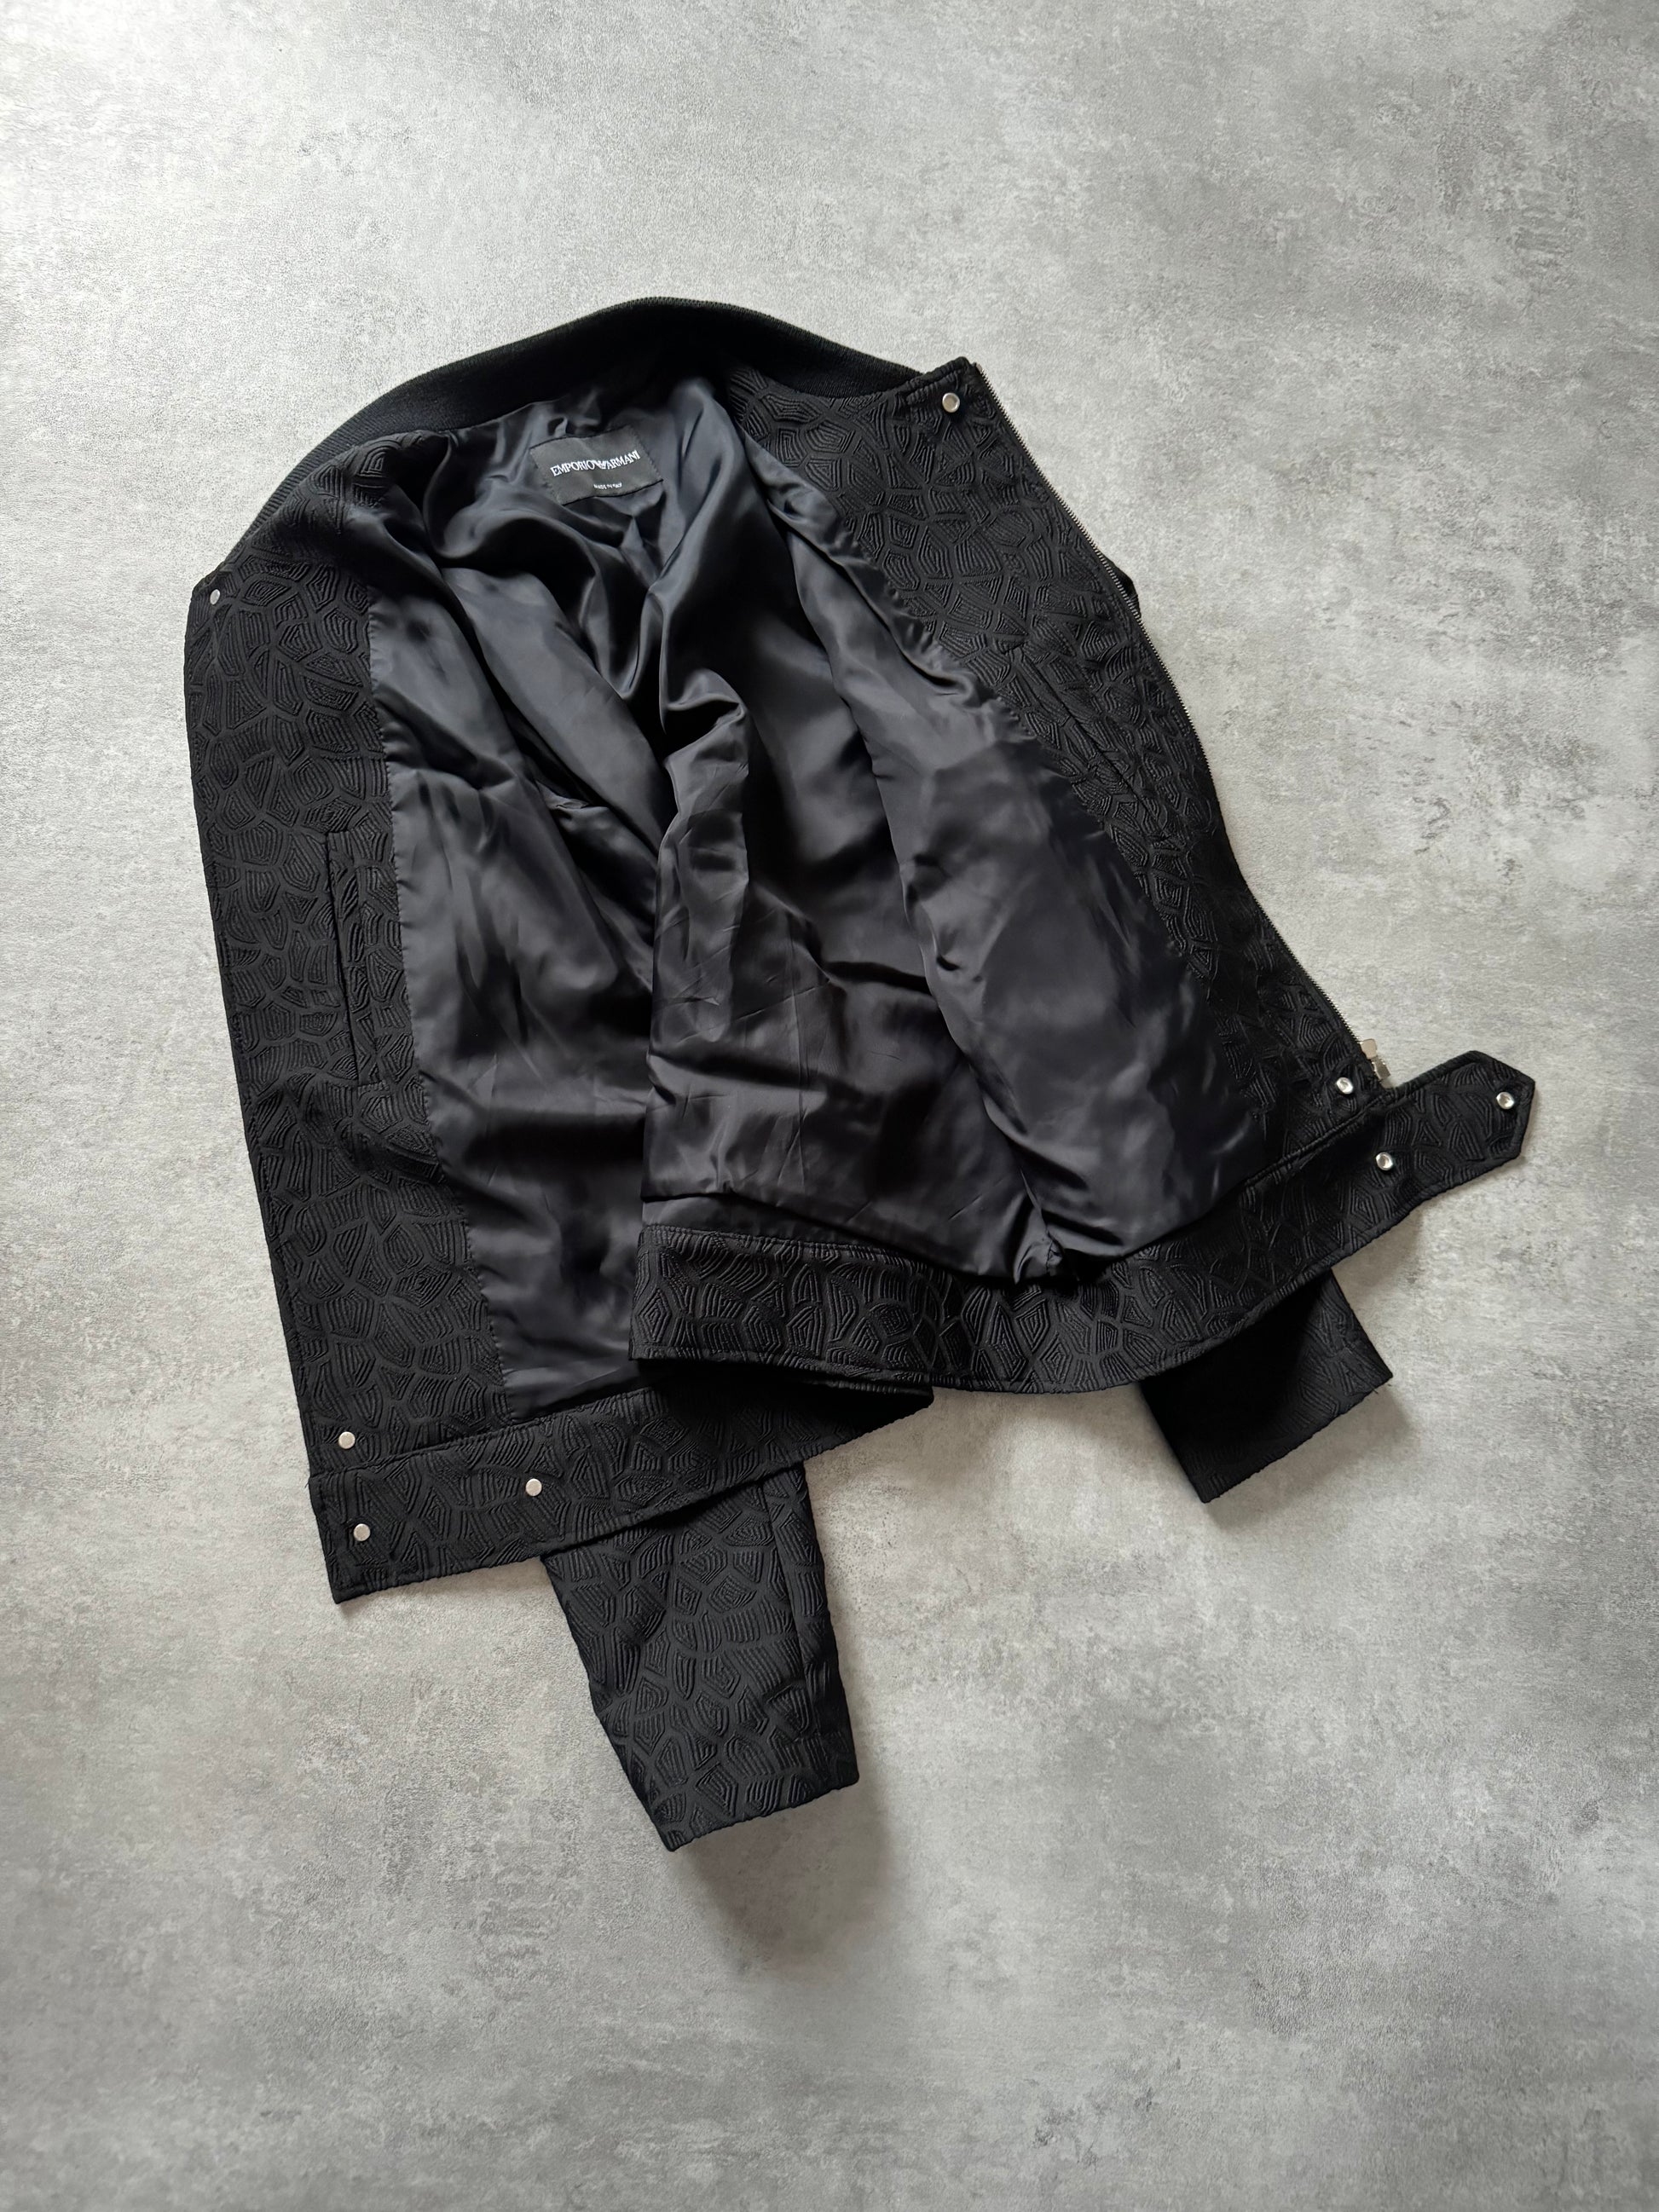 FW2018 Emporio Armani Asymmetrical Black Light Shadow Jacket (S) - 7